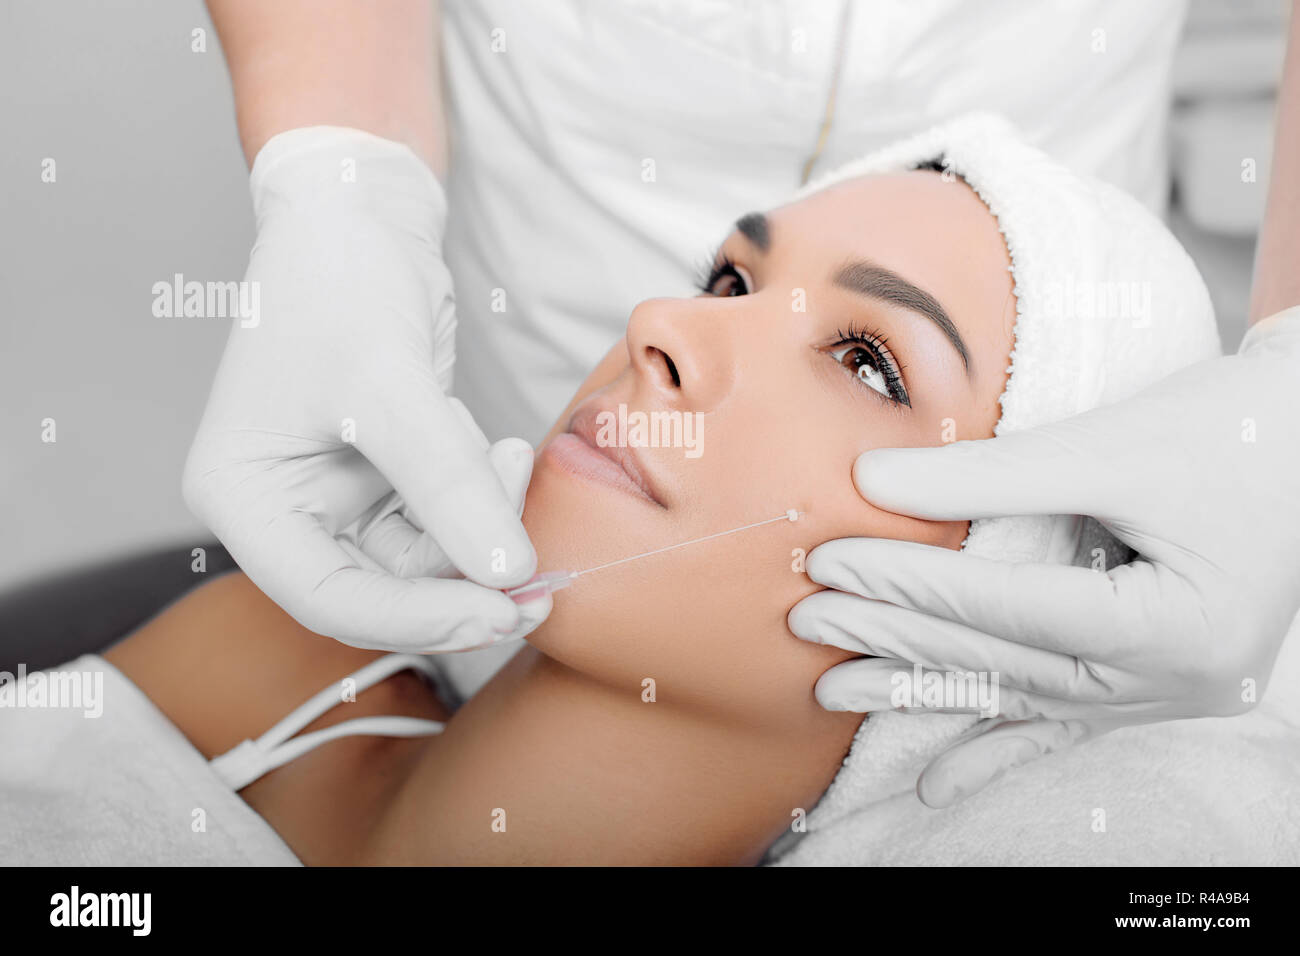 Ästhetische Gesichtschirurgie, kosmetische Technik, mesothreads anheben und konturierung Gesicht Stockfoto